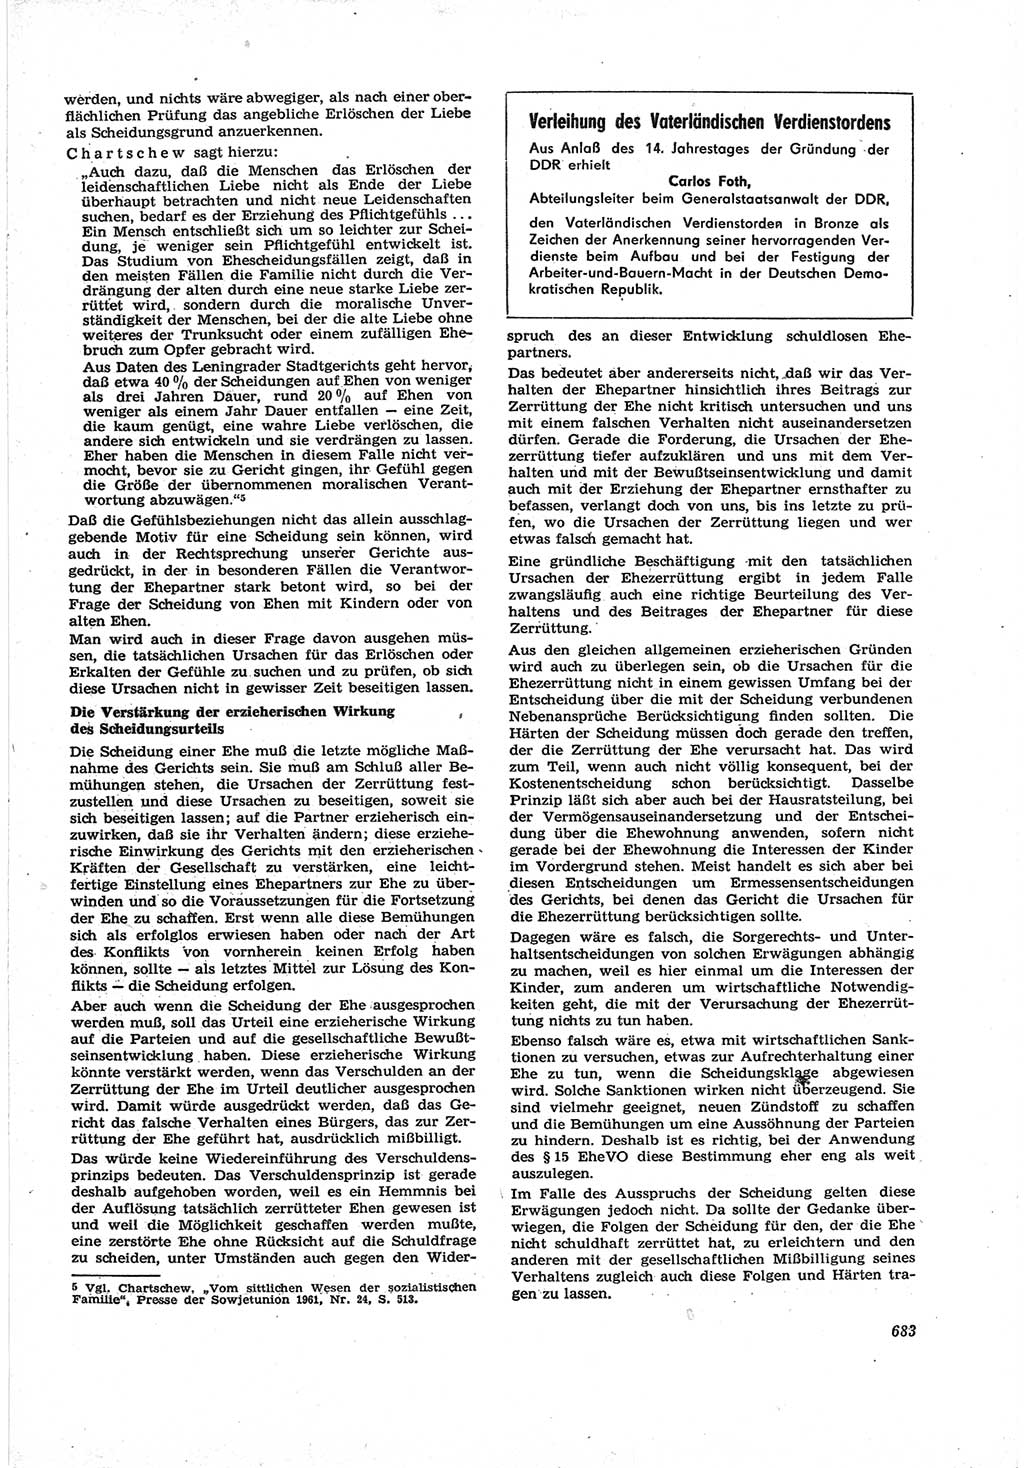 Neue Justiz (NJ), Zeitschrift für Recht und Rechtswissenschaft [Deutsche Demokratische Republik (DDR)], 17. Jahrgang 1963, Seite 683 (NJ DDR 1963, S. 683)